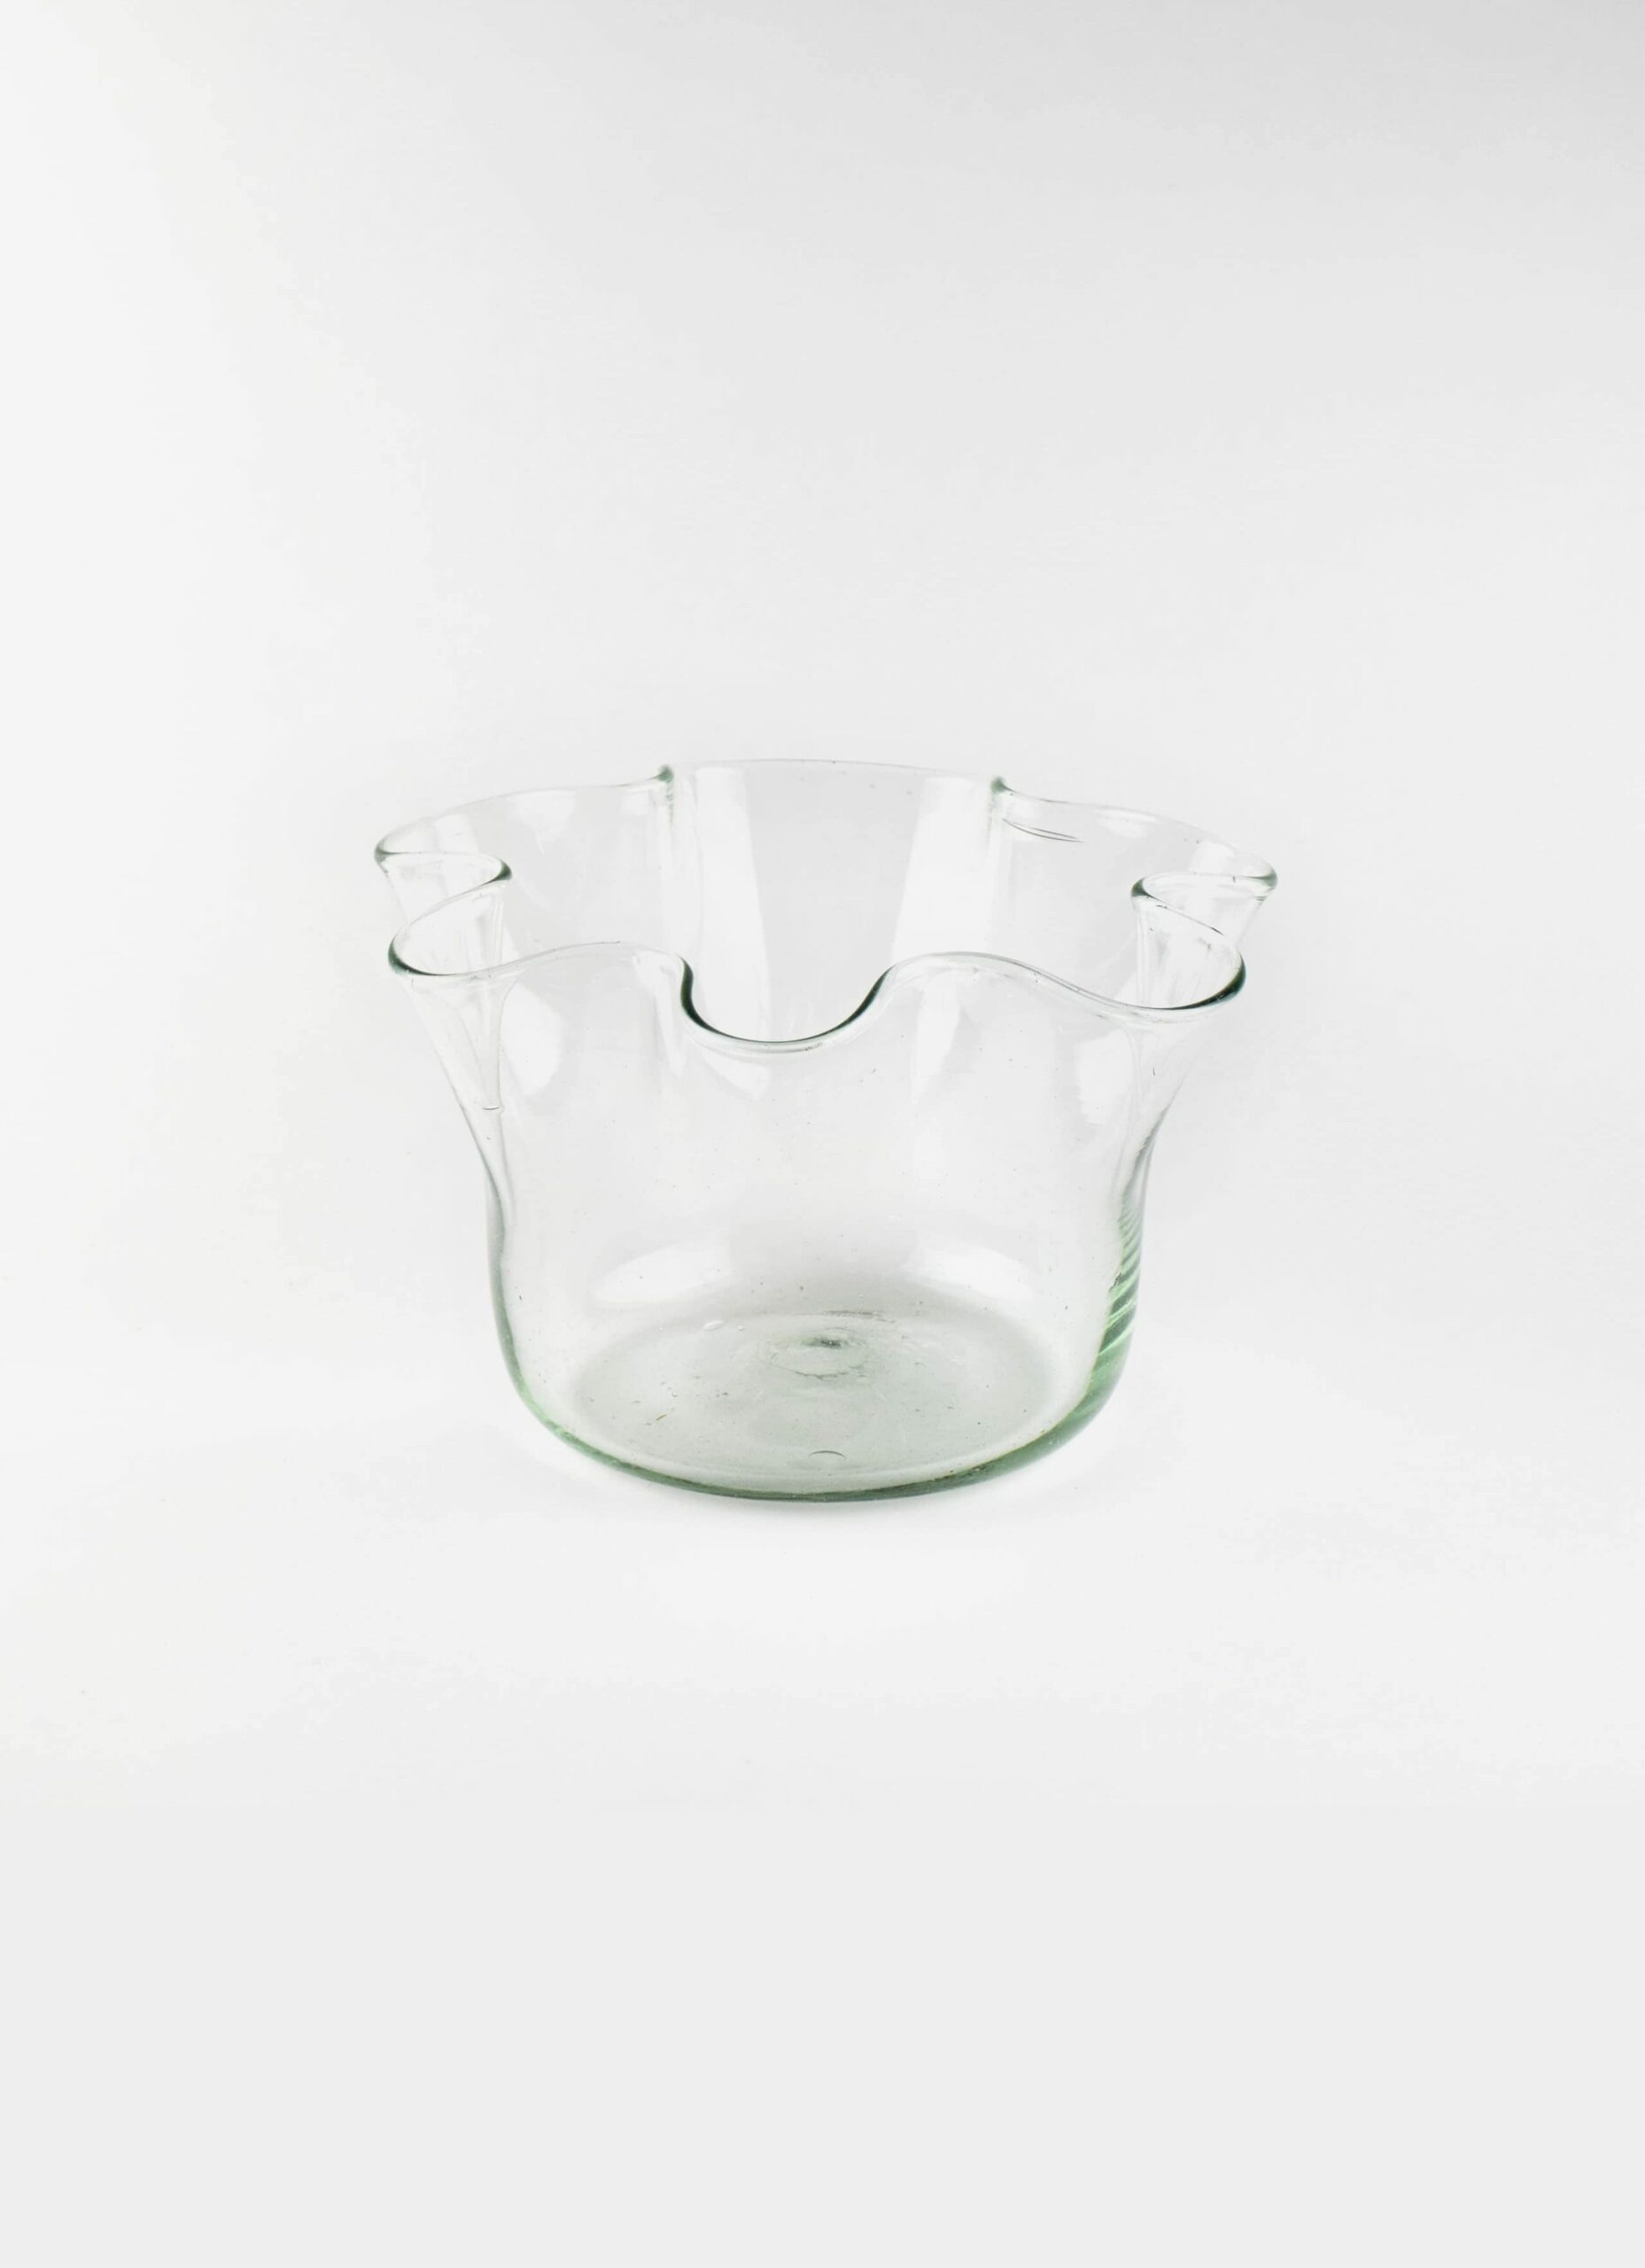 La Soufflerie - Foulard - Mouth blown glass - Vase - clear